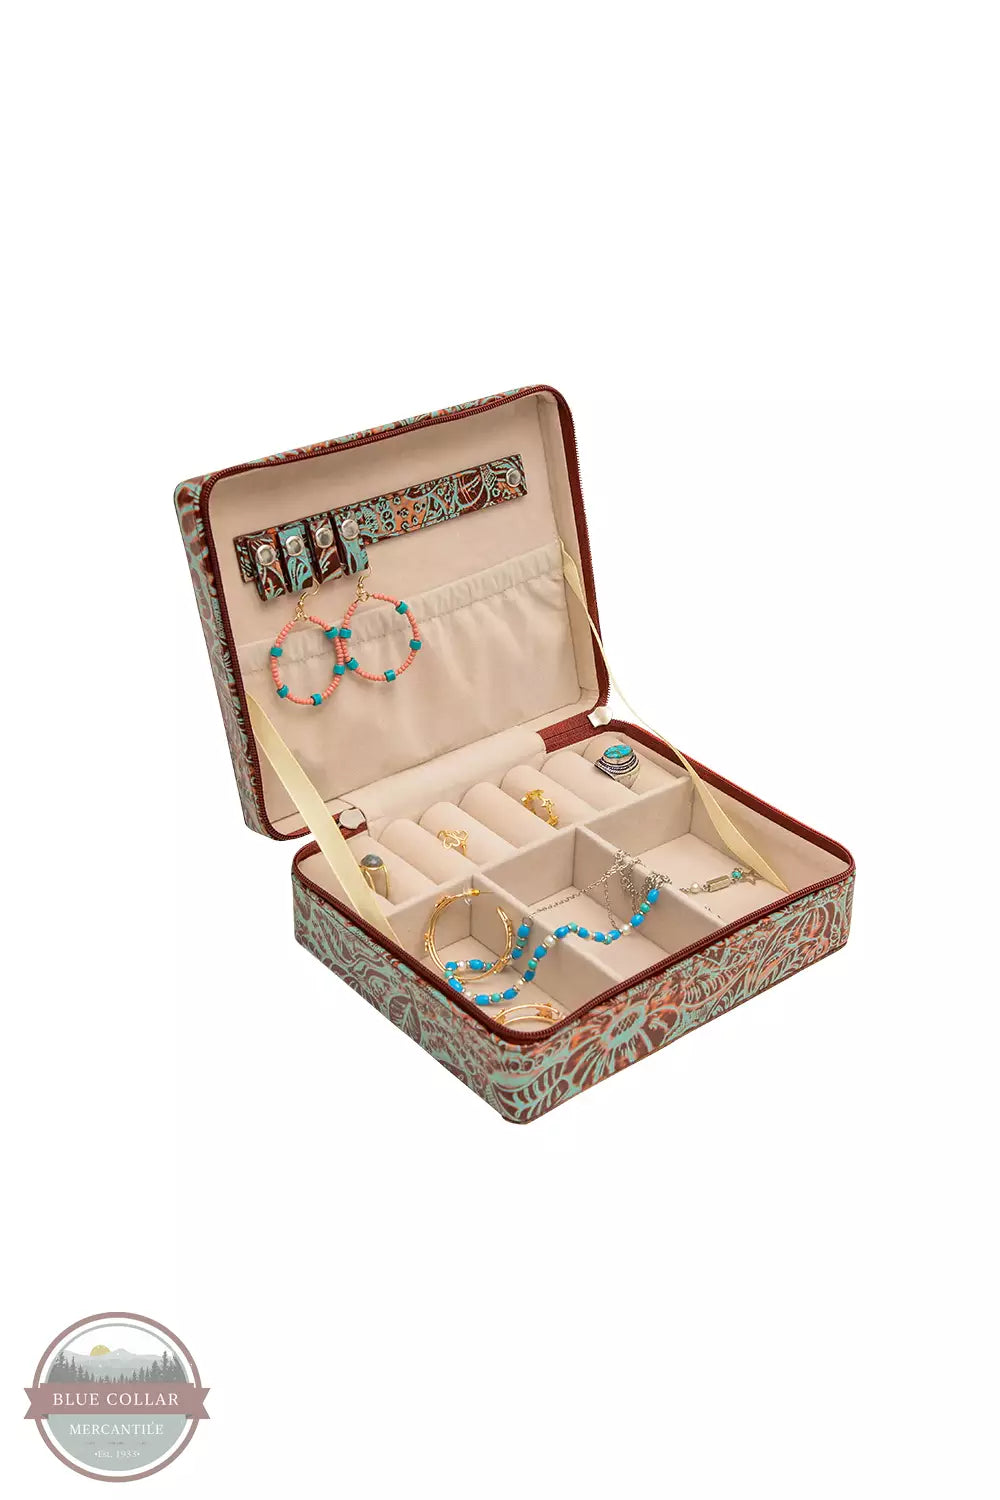 Myra Bag S-6959 Kash Jewelry Box Inside View with Jewelry